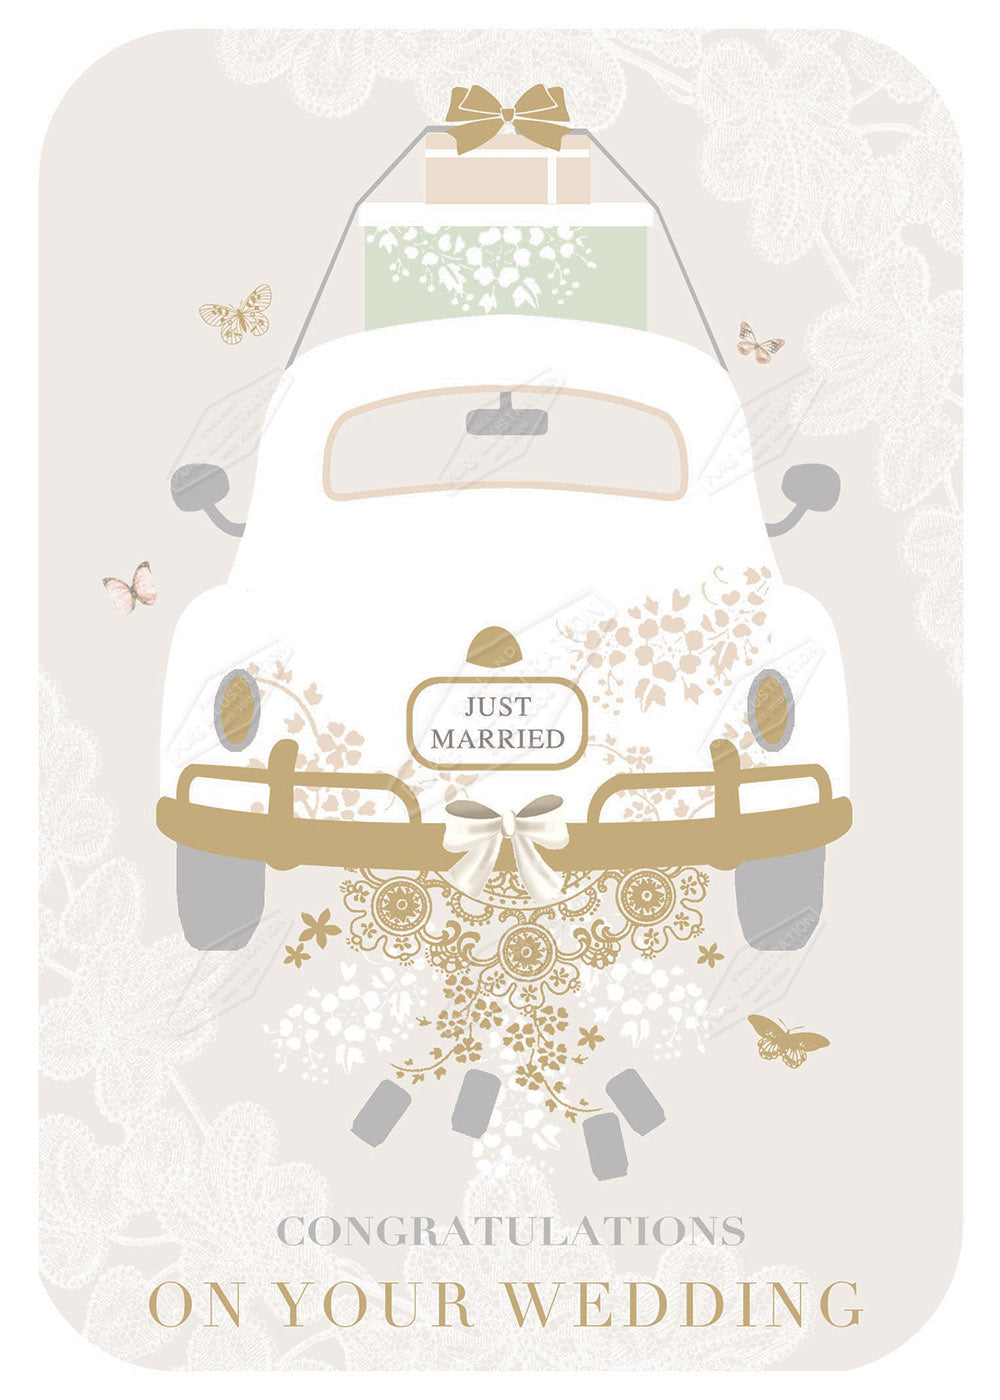 00027957DEV - Deva Evans is represented by Pure Art Licensing Agency - Wedding Greeting Card Design